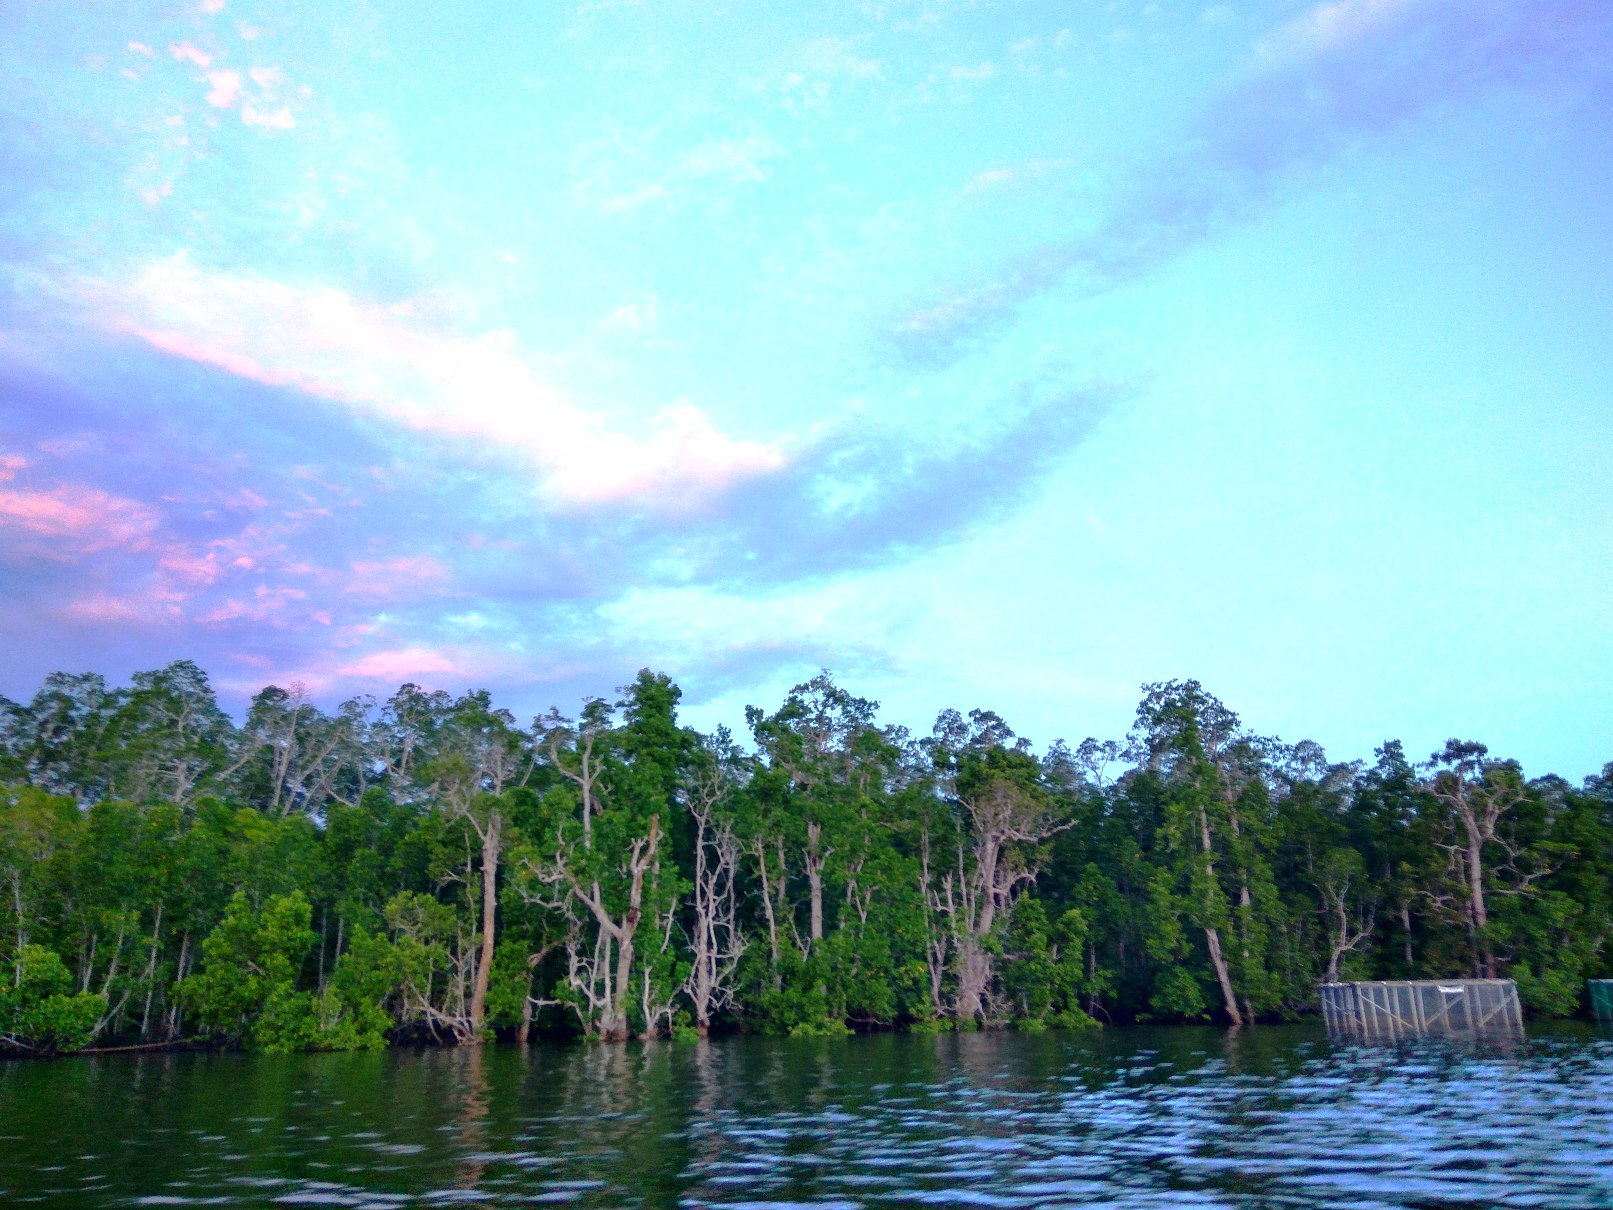 Hutan mangrove di Teluk Etna, Kabupaten Kaimana, Provinsi Papua Barat yang masih asri. Mangrove di Teluk Etna menjadi bagian dari mangrove Kaimana yang terluas dan potensial menjadi blue carbon di Indonesia. Foto : M Ambari 